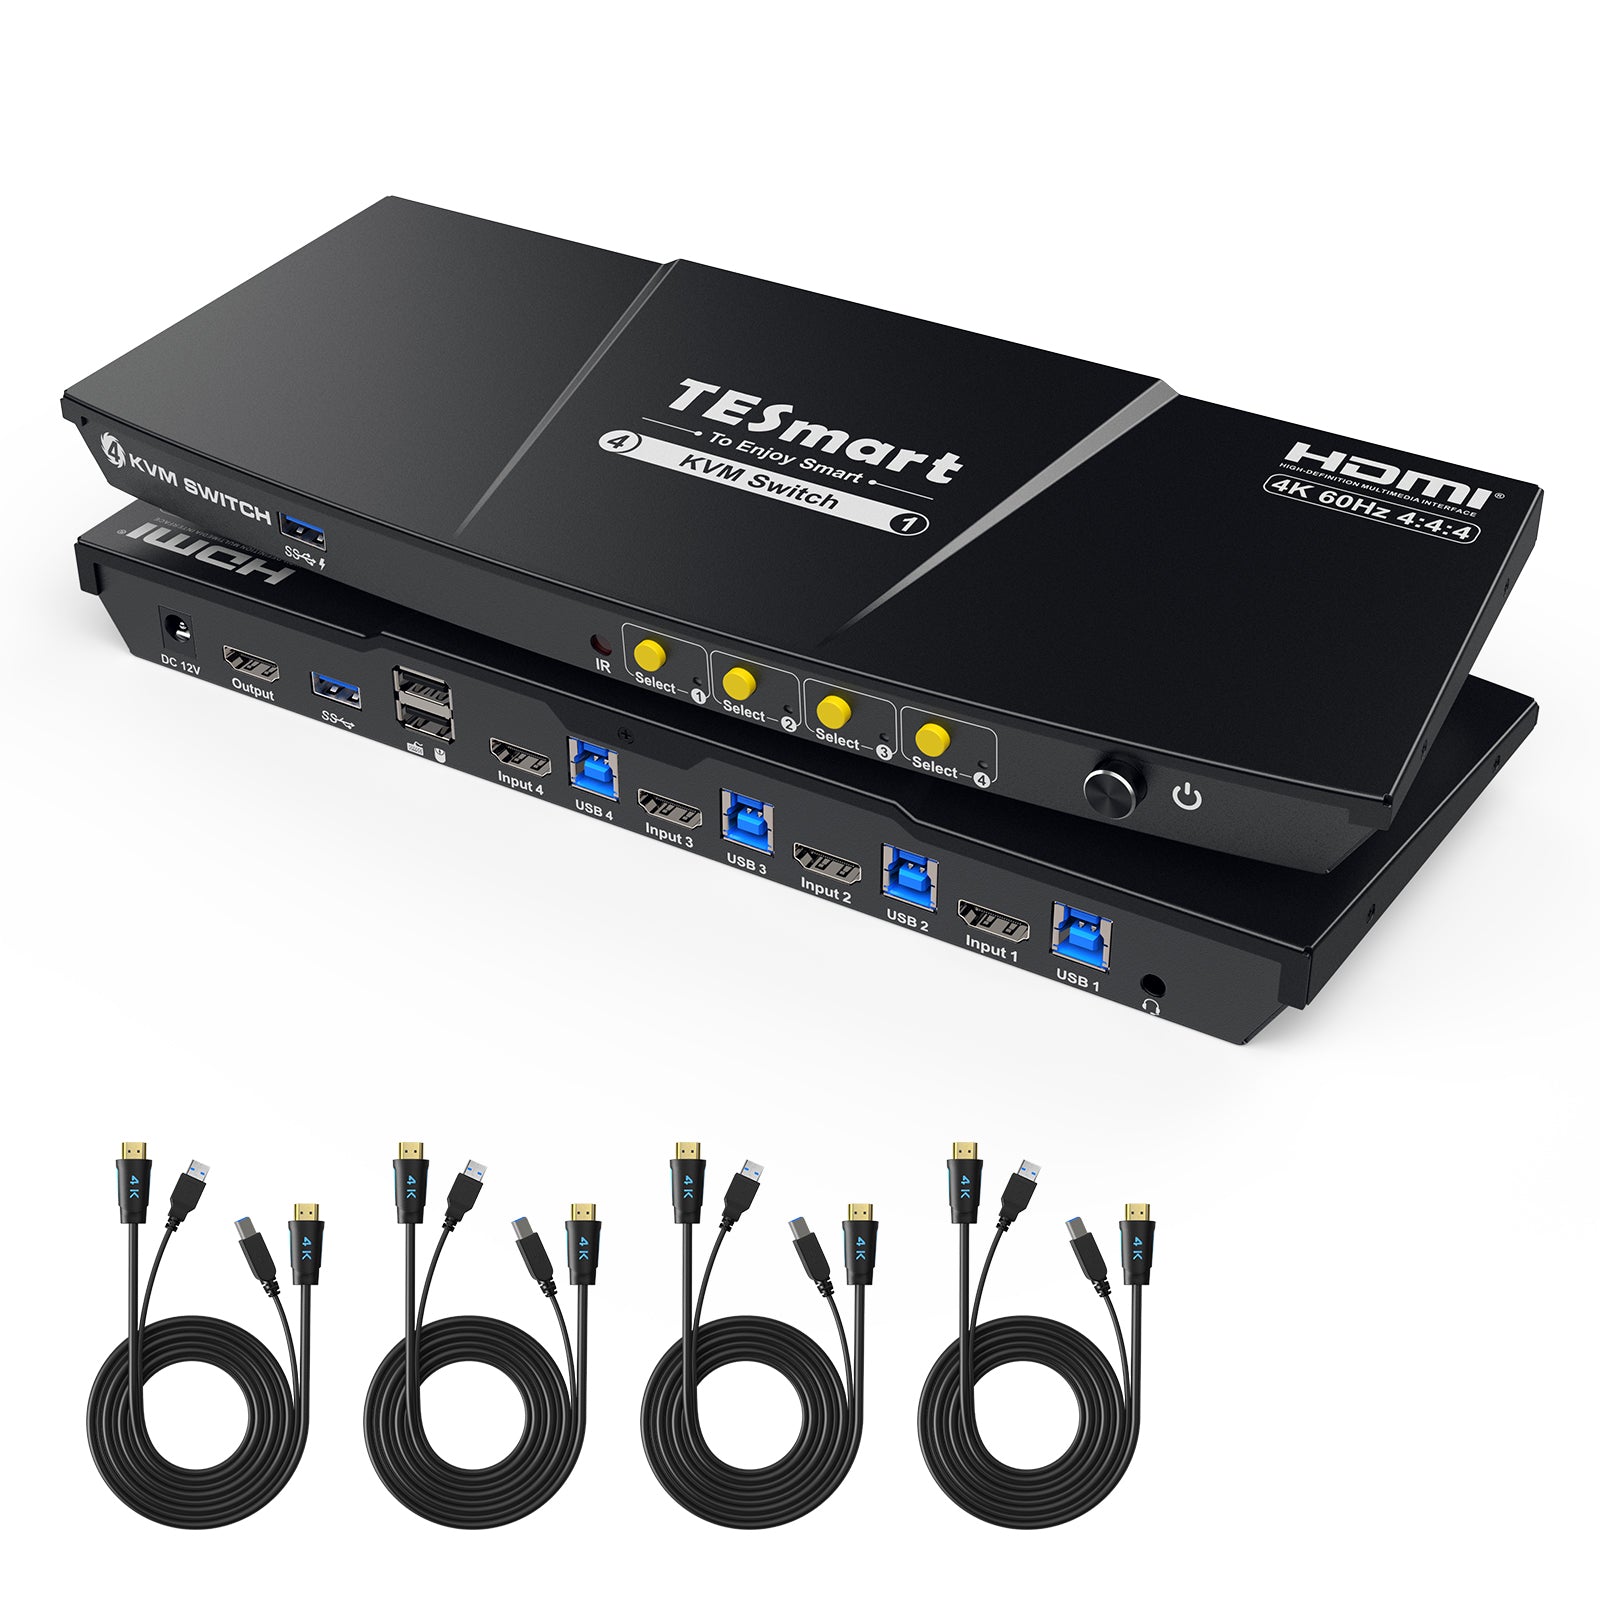 4 ポート KVM スイッチ HDMI 4K60Hz USB3.0 EDID付き | 4PC&1モニター